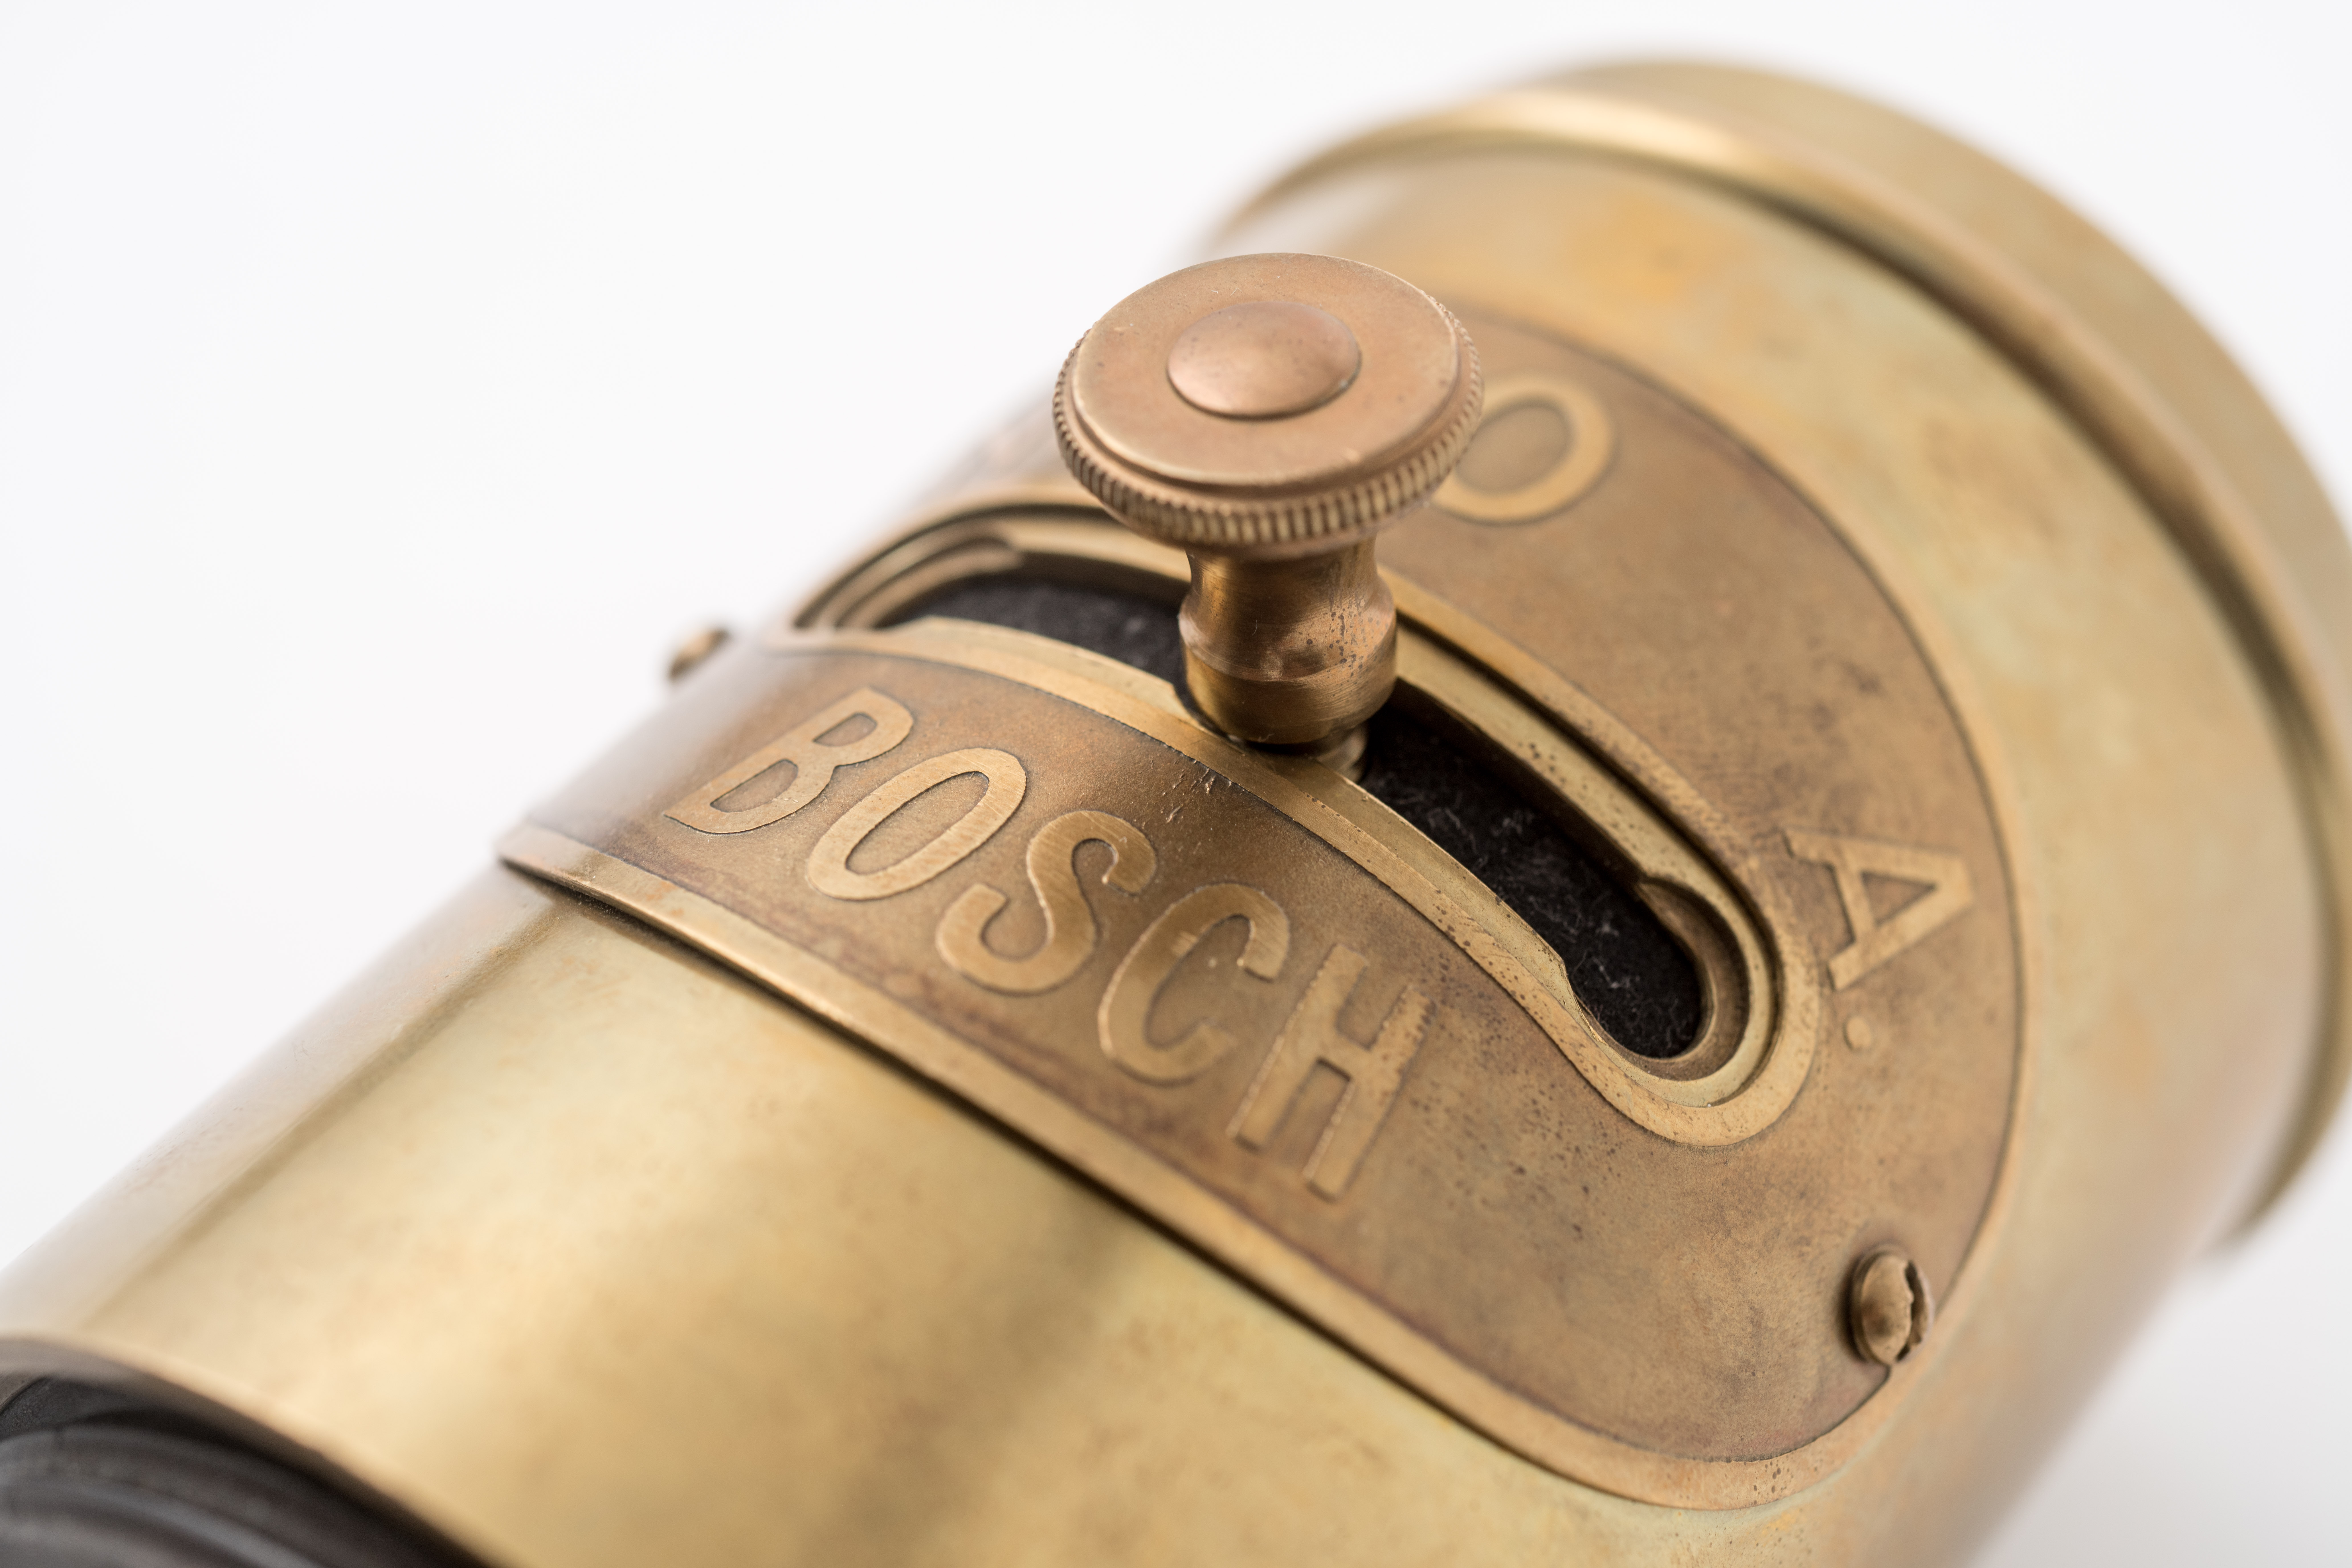 Sondaggio Bosch: per due terzi degli automobilisti tedeschi le chiavi dell'auto sono una seccatura